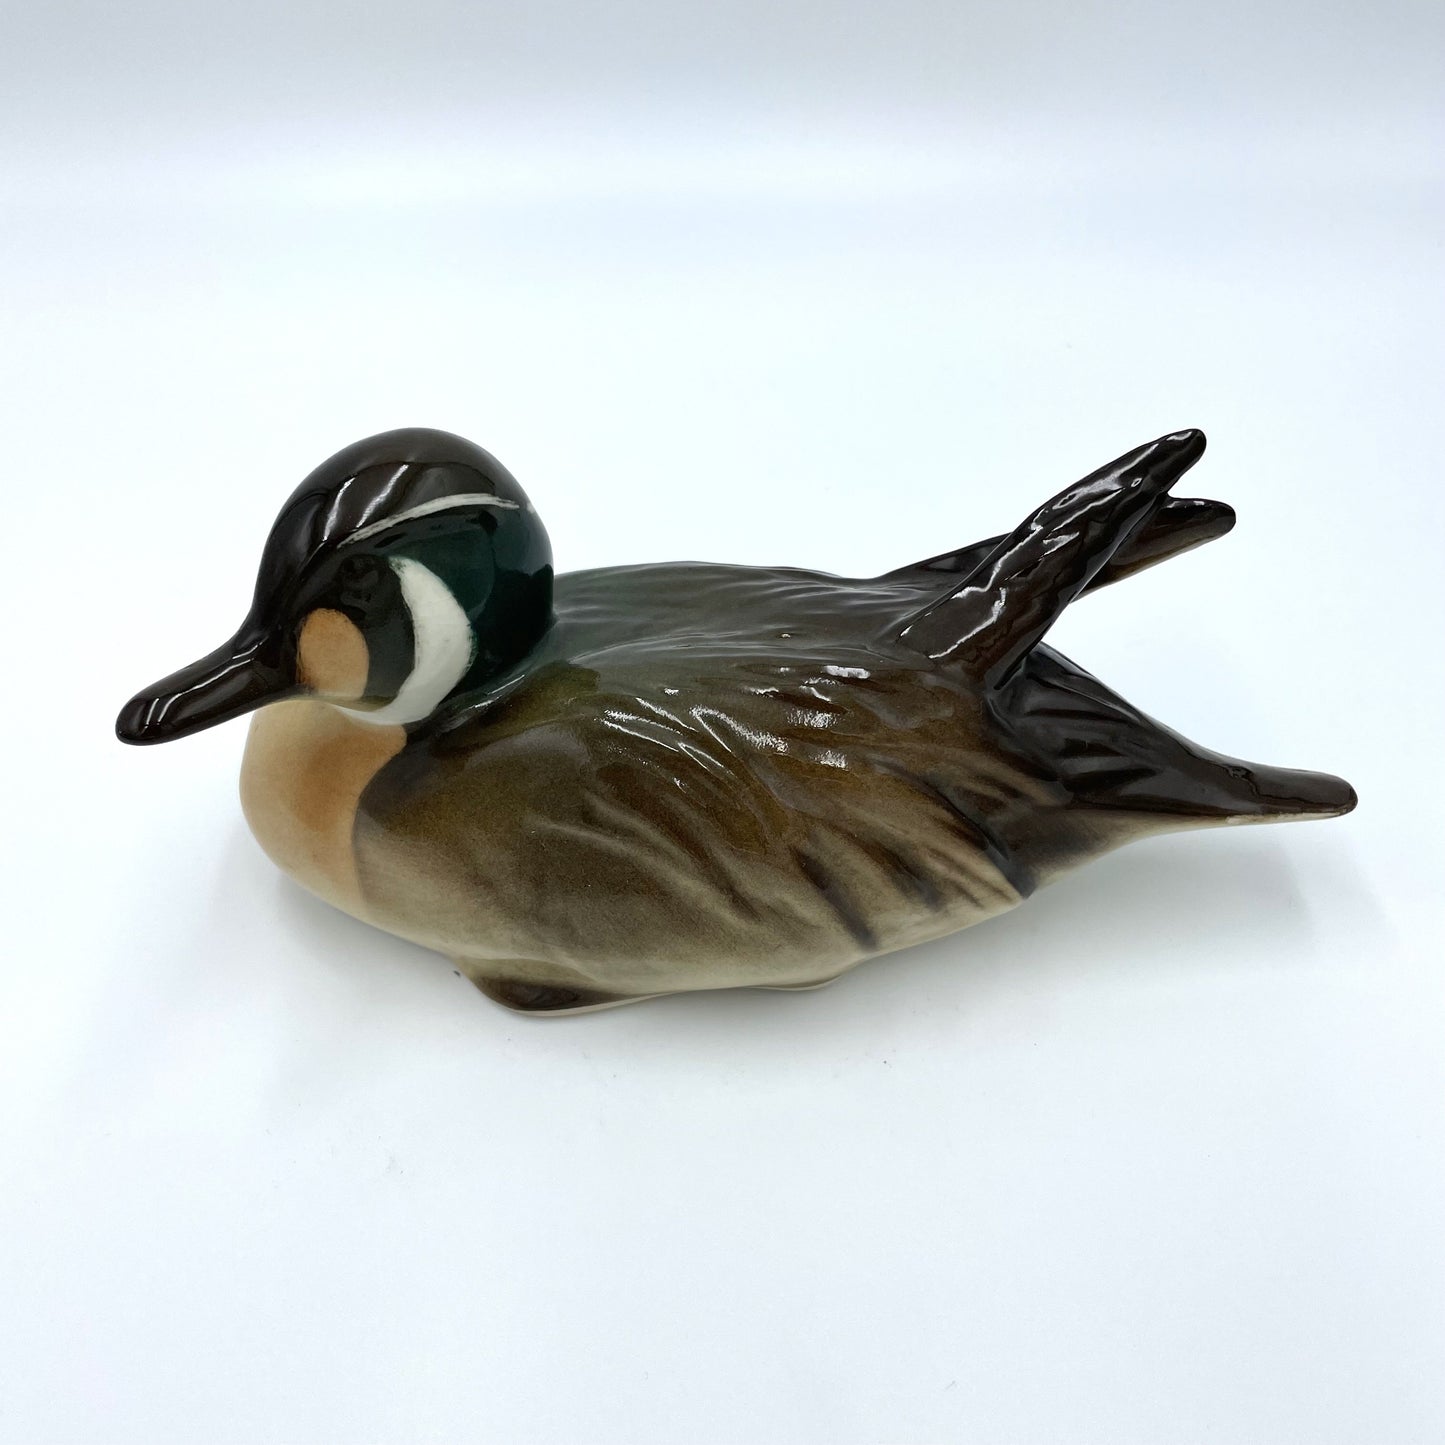 Vintage Mallard Canvasback Duck Figurine - 8cm